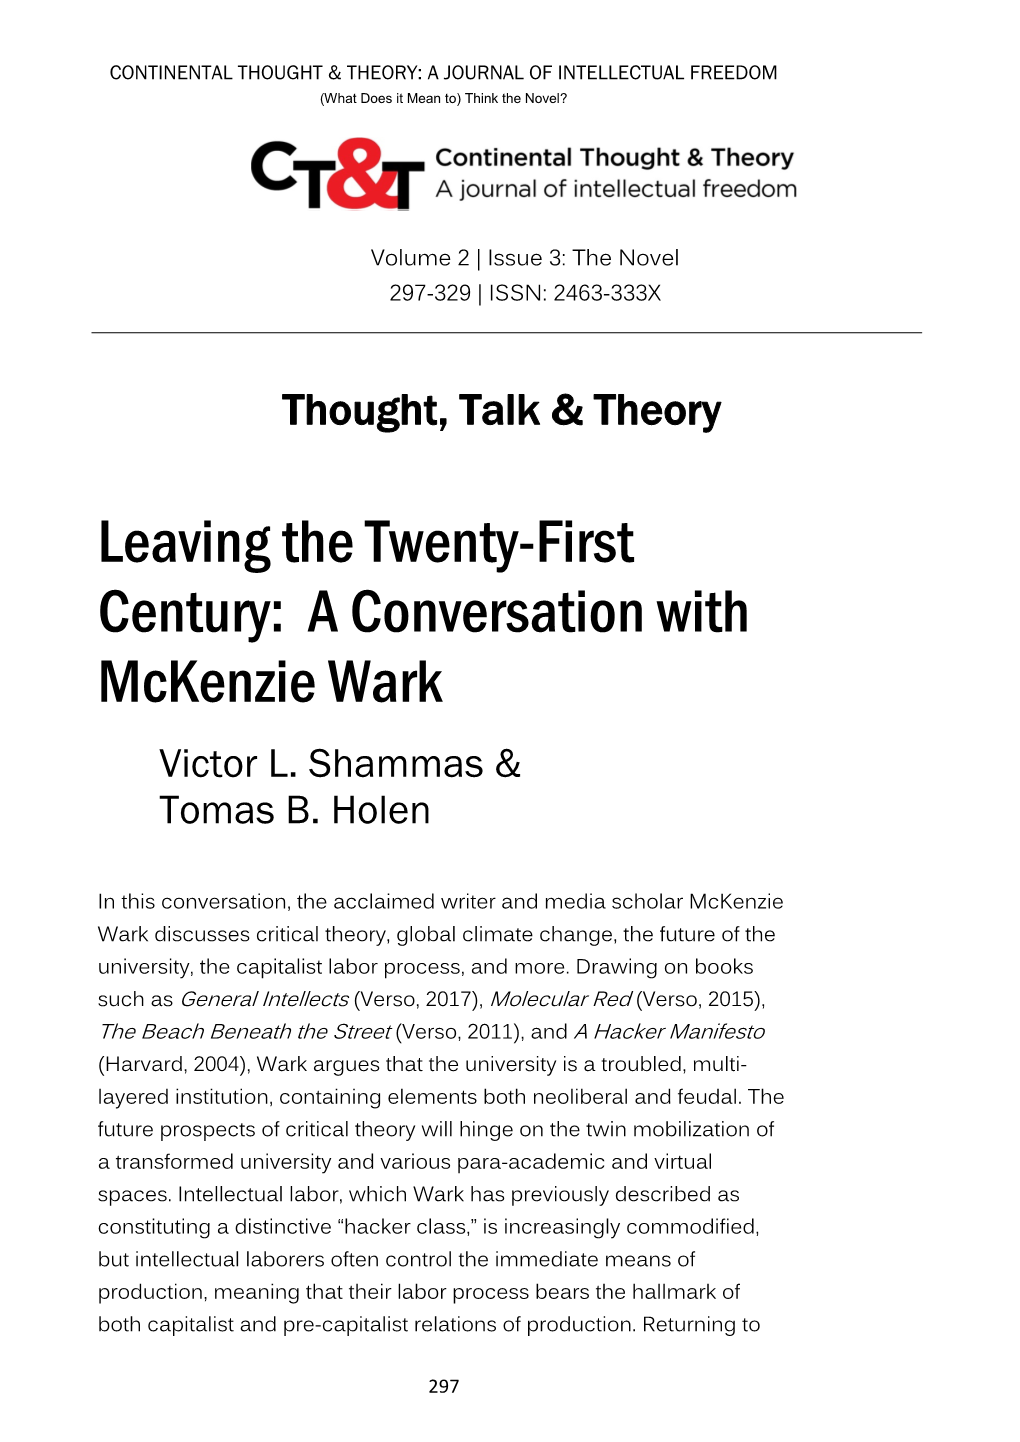 A Conversation with Mckenzie Wark